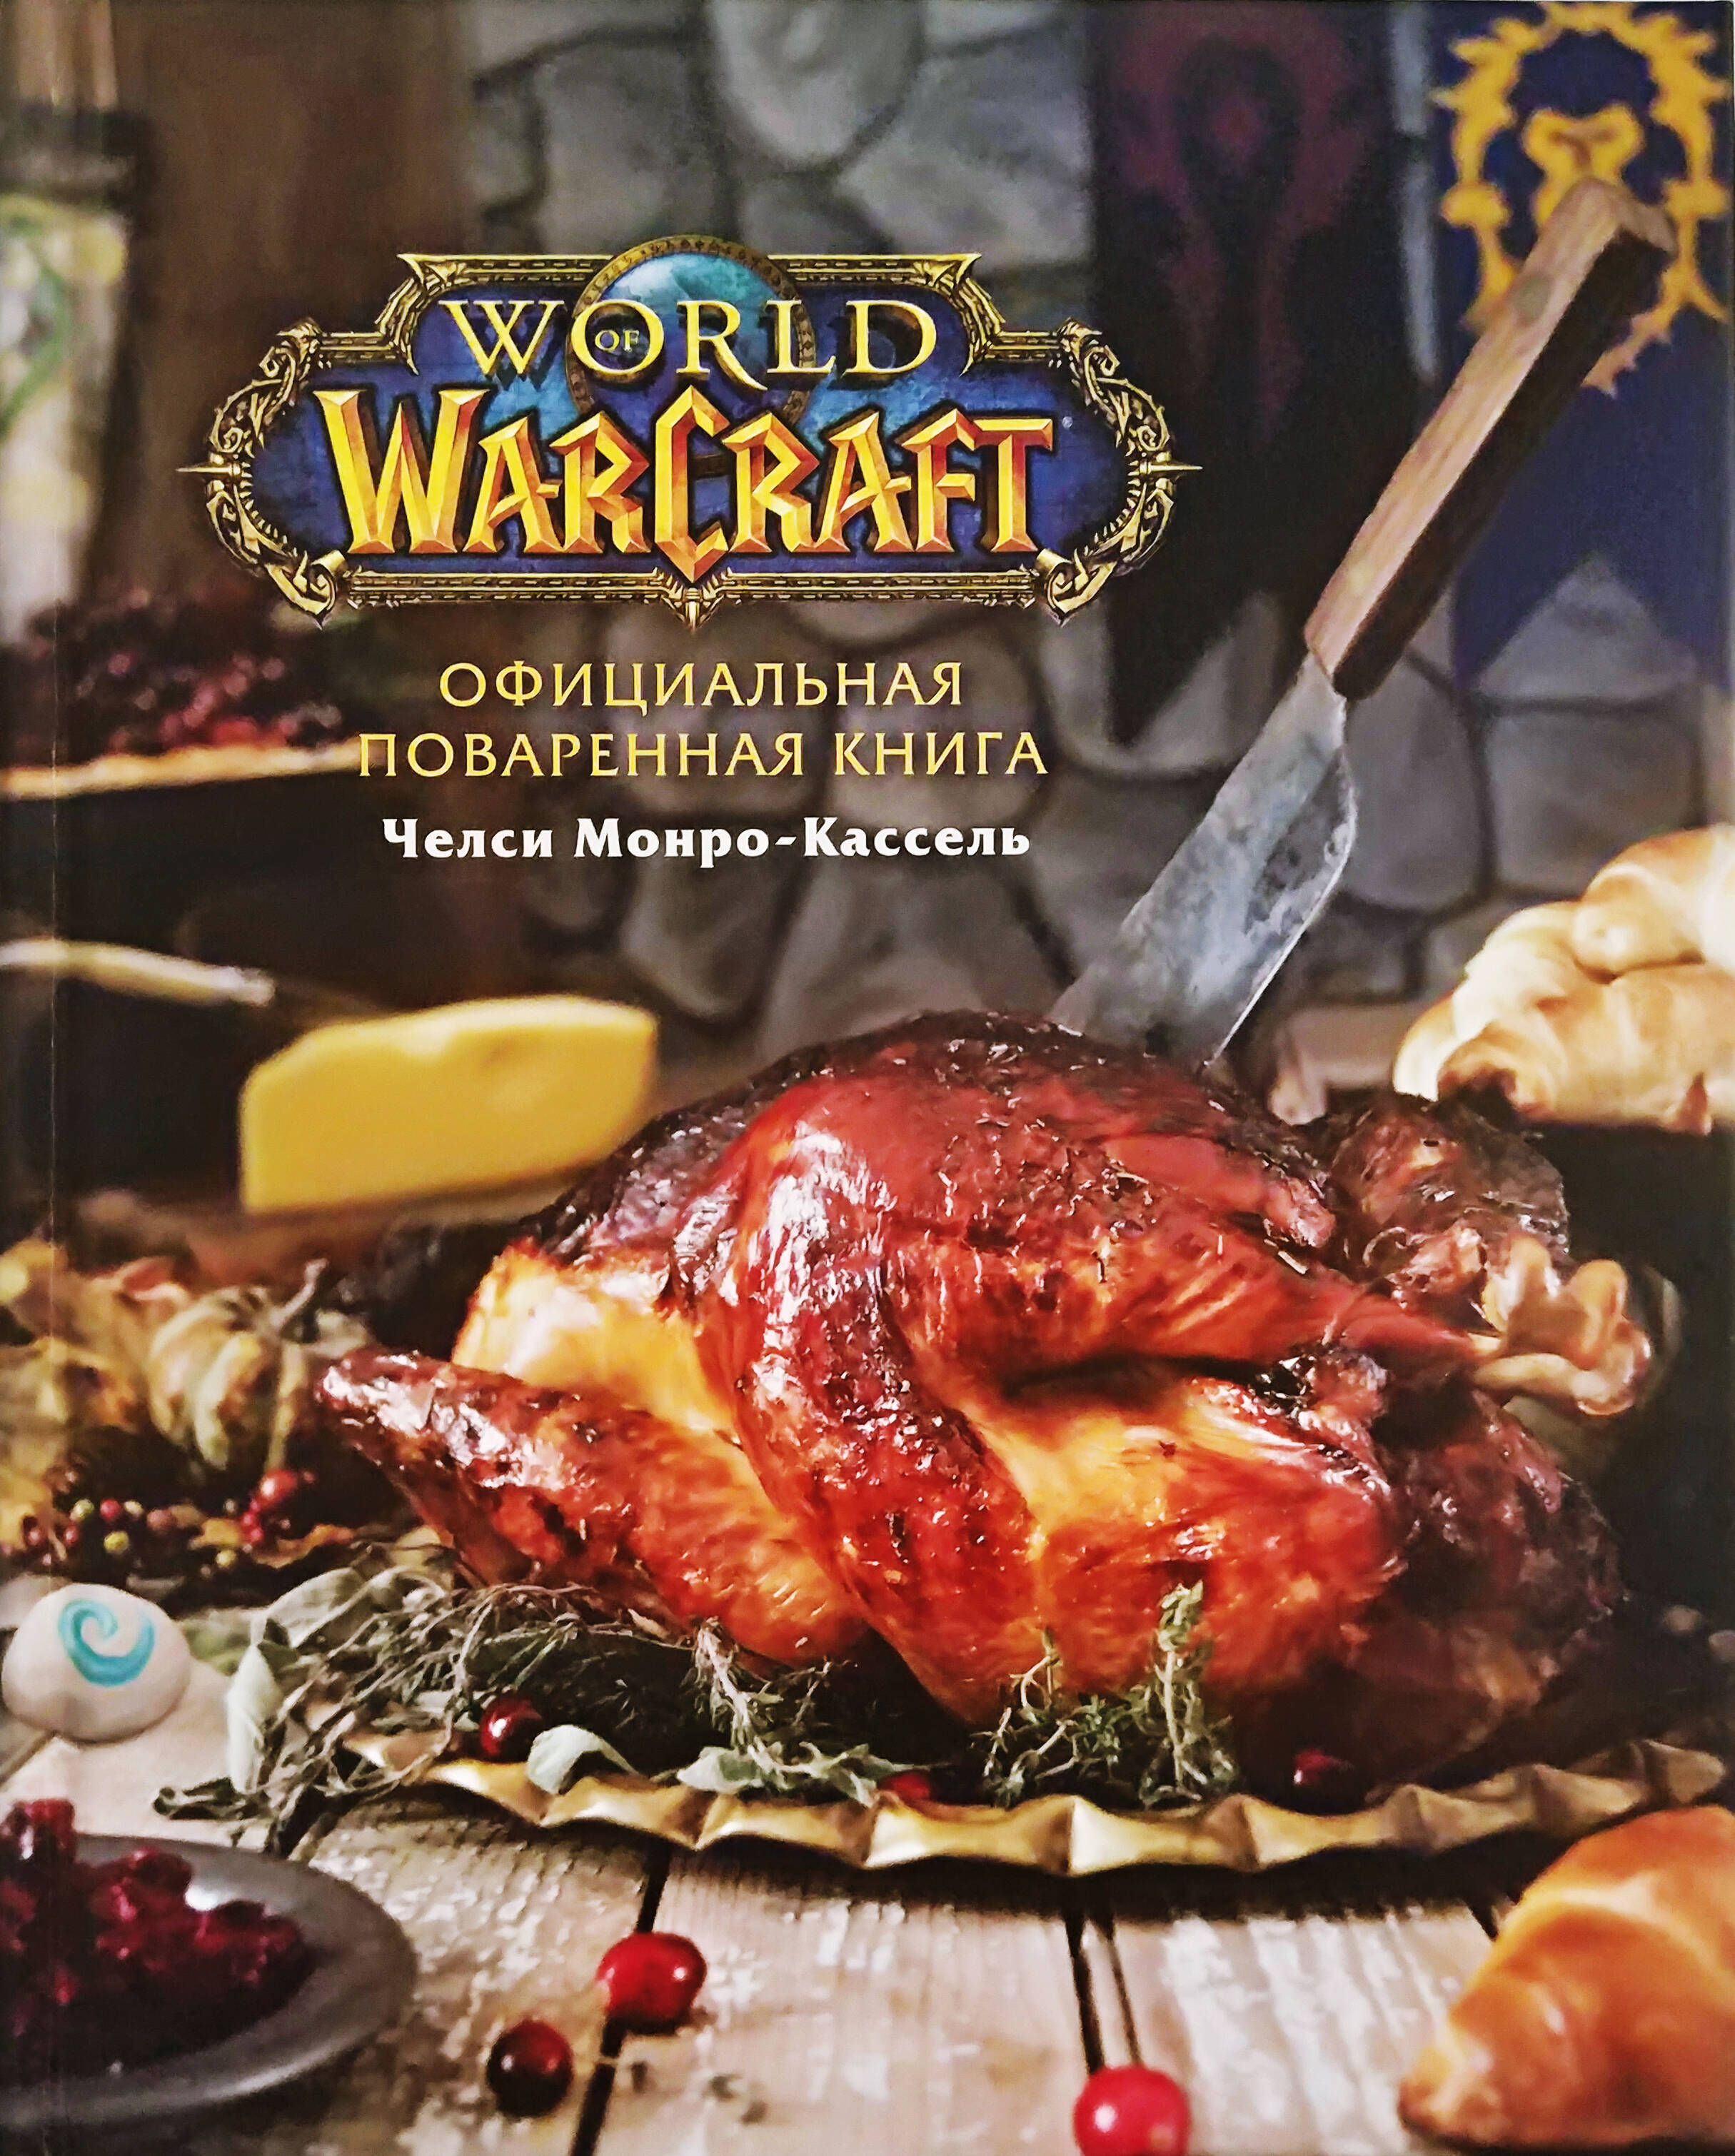 Монро-Кассель Челси Официальная поваренная книга World of Warcraft world of warcraft новые вкусы азерота официальная поваренная книга монро кассель ч